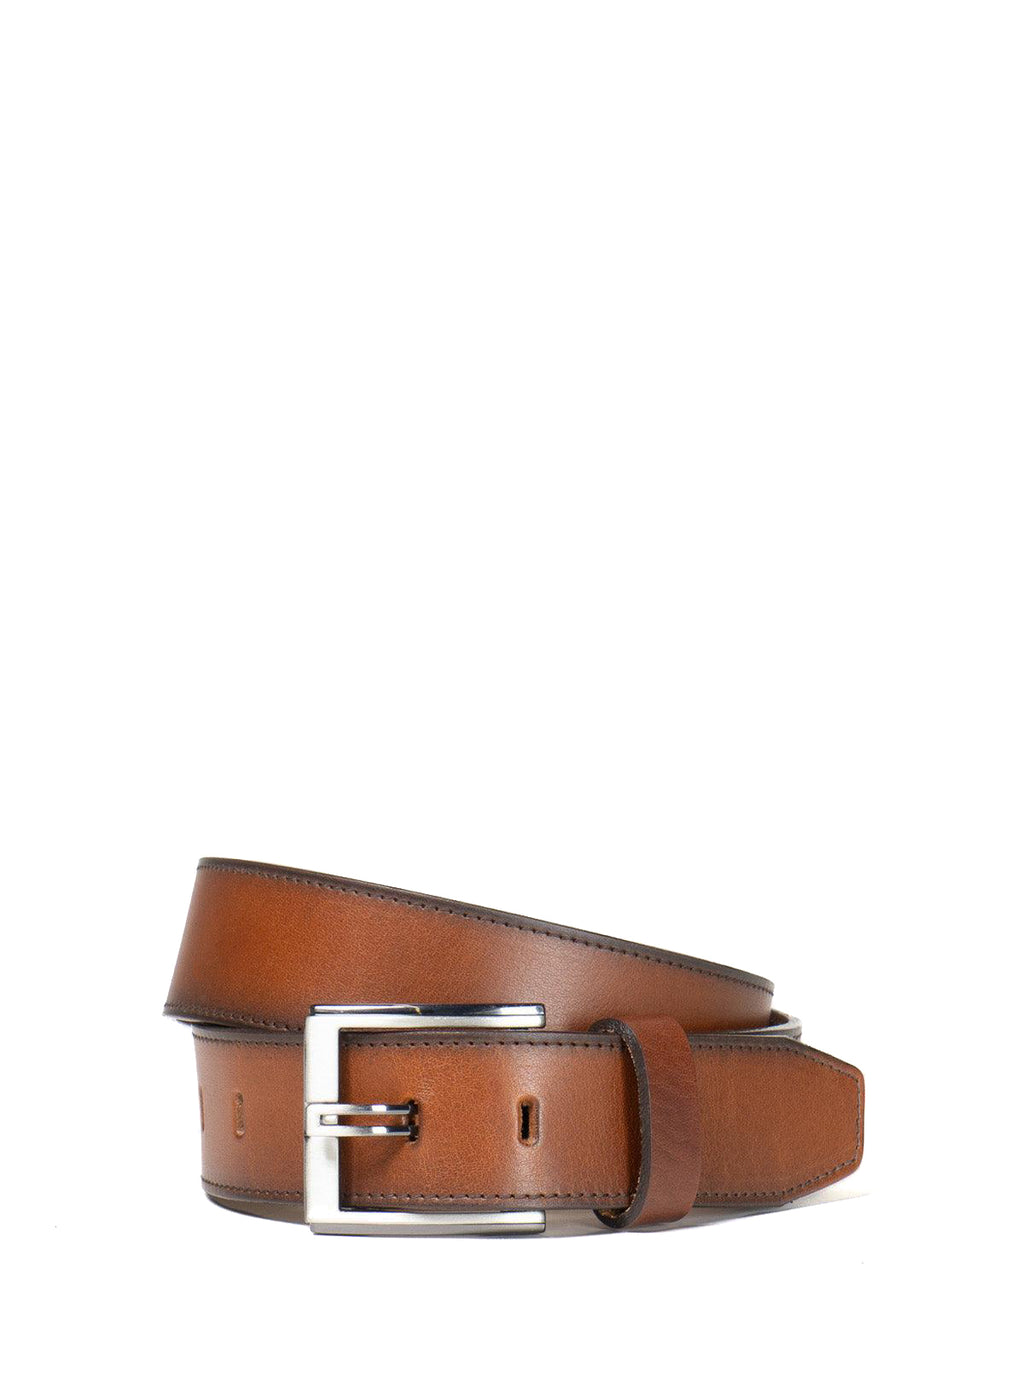 Buy CCBELTS Men's Leather Belt (BR019-44, Brown, 44) at